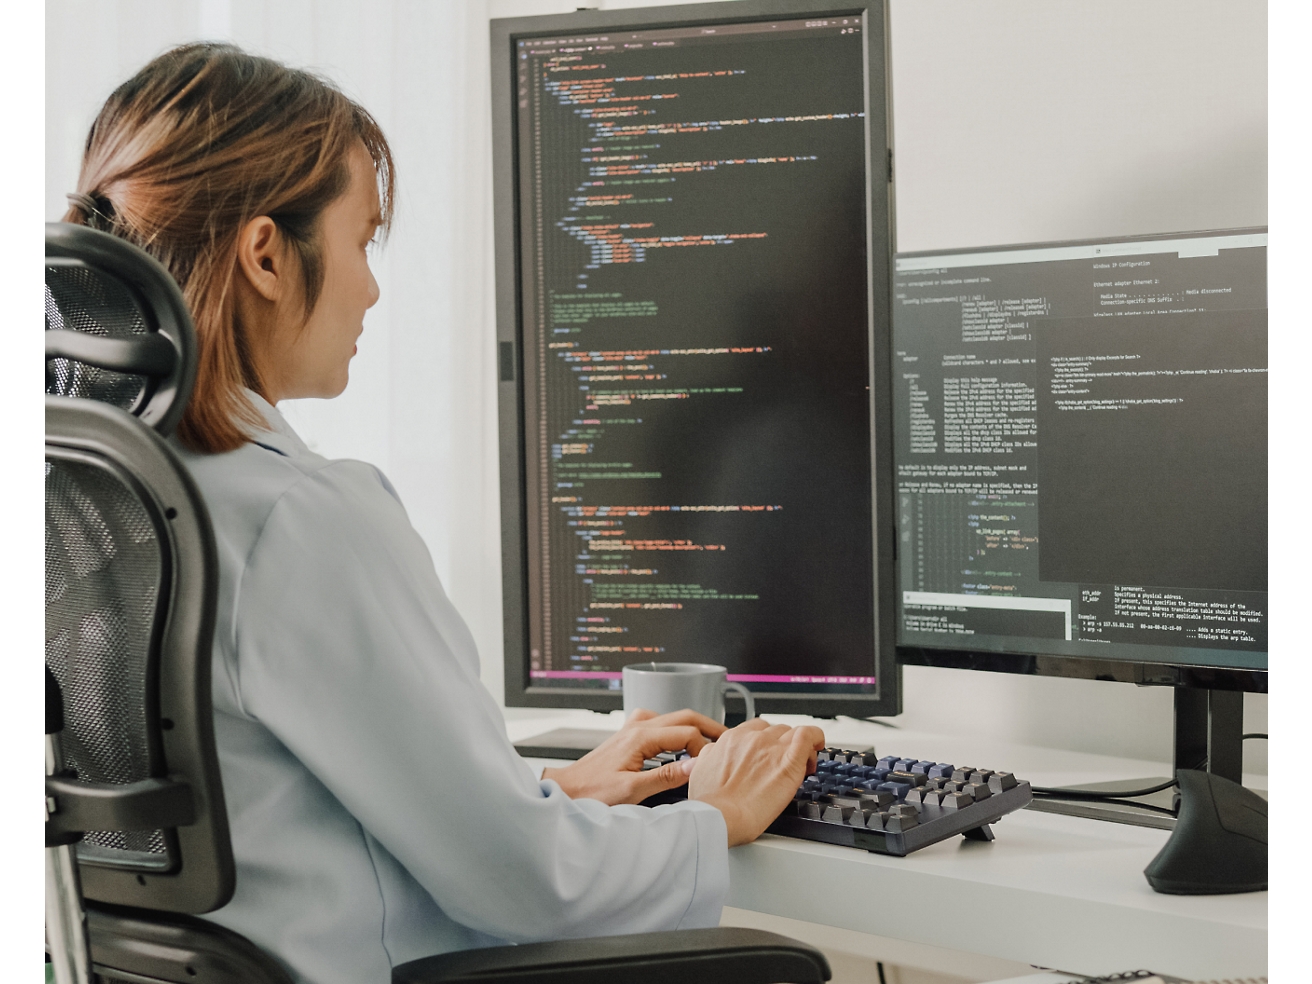 Женщина сидит в офисном кресле и программирует на компьютере, на нескольких экранах которого отображается программный код.